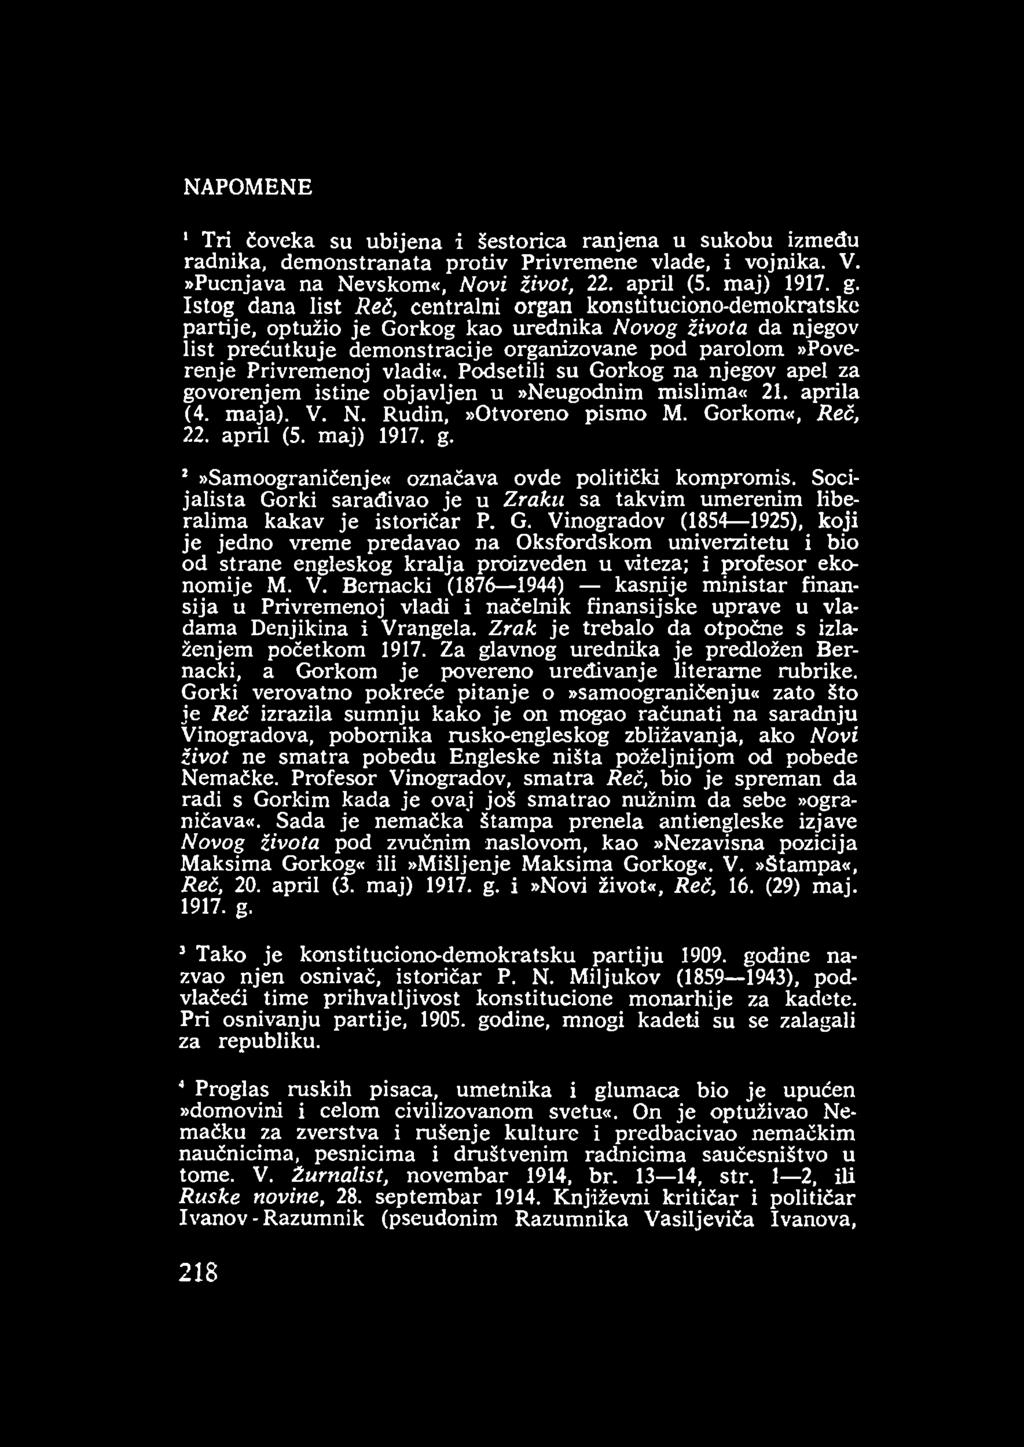 Privremenoj vladi«. Podsetili su Gorkog na njegov apel za govorenjem istine objavljen u»neugodnim mislima«21. aprila (4. maja). V. N. Rudin,»Otvoreno pism o M. Gorkom«, Reč, 22. april (5. maj) 1917.